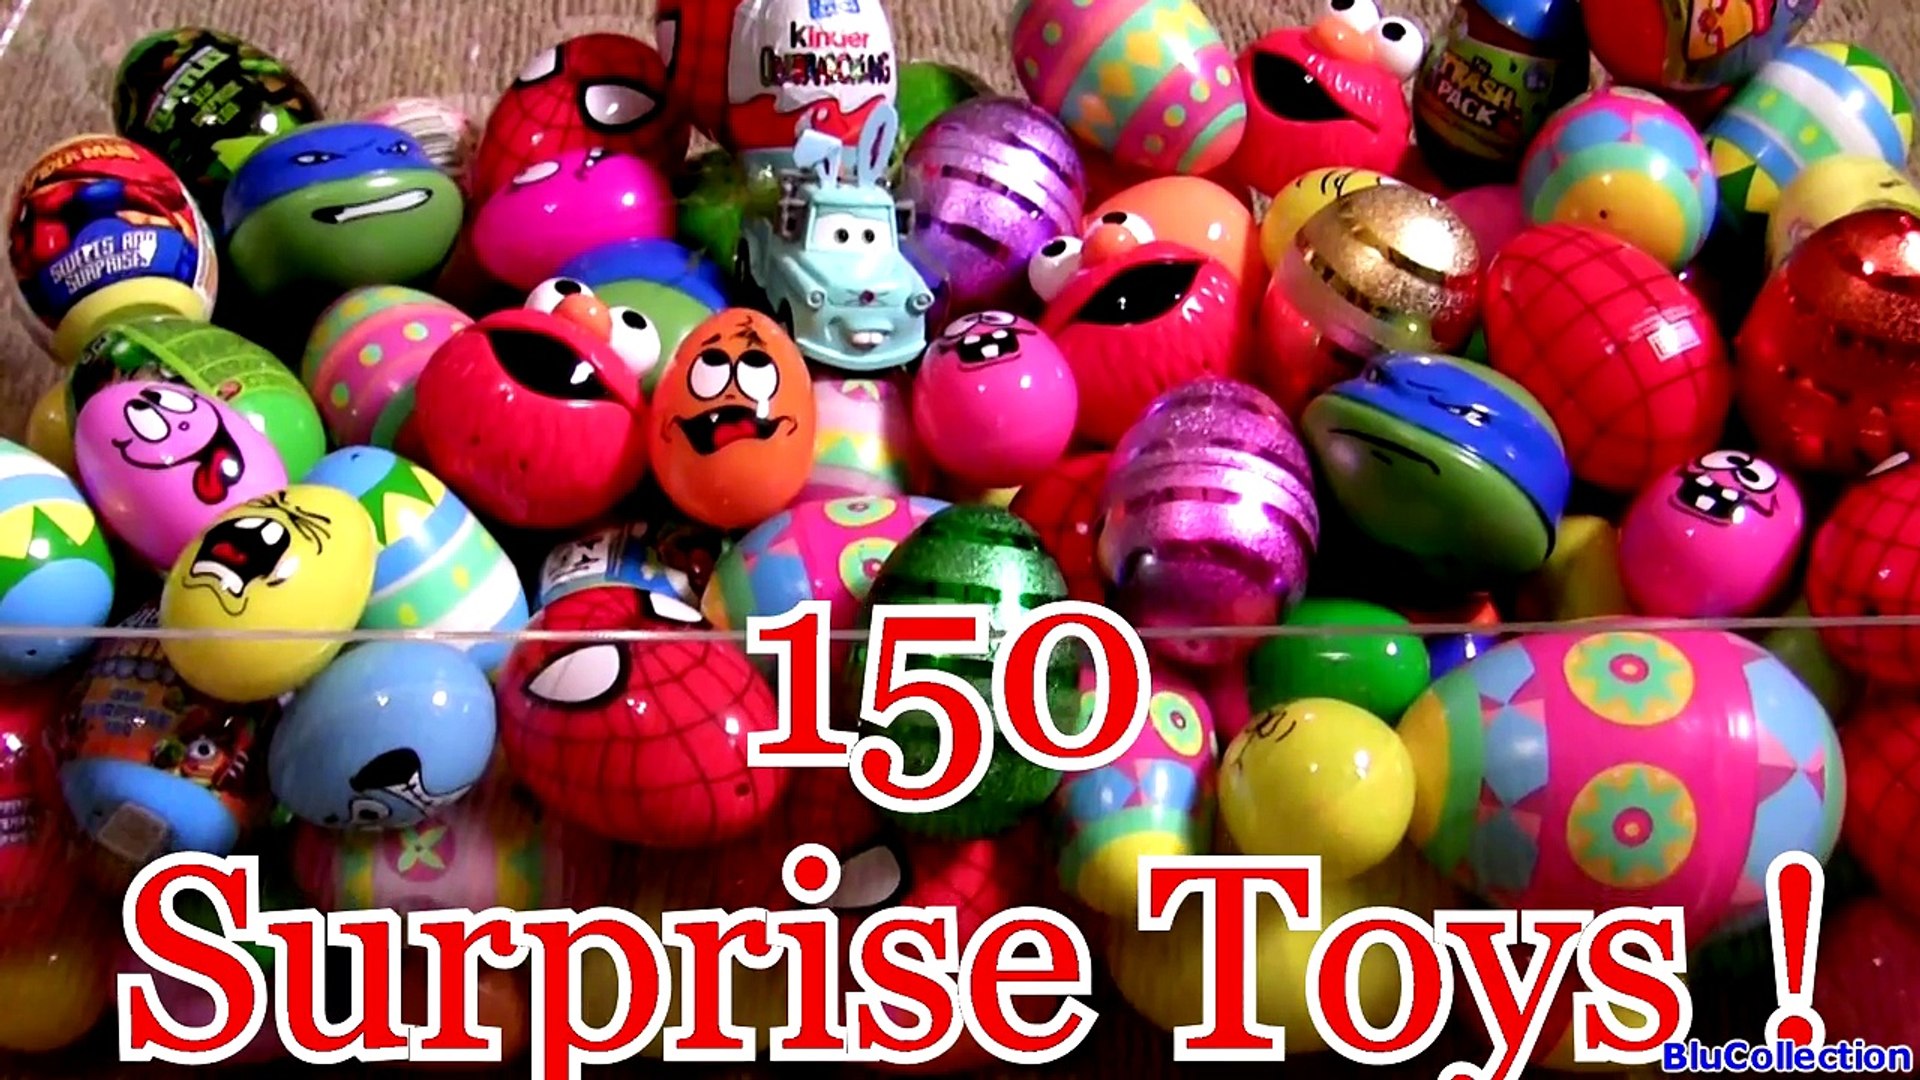 surprise toys eggs